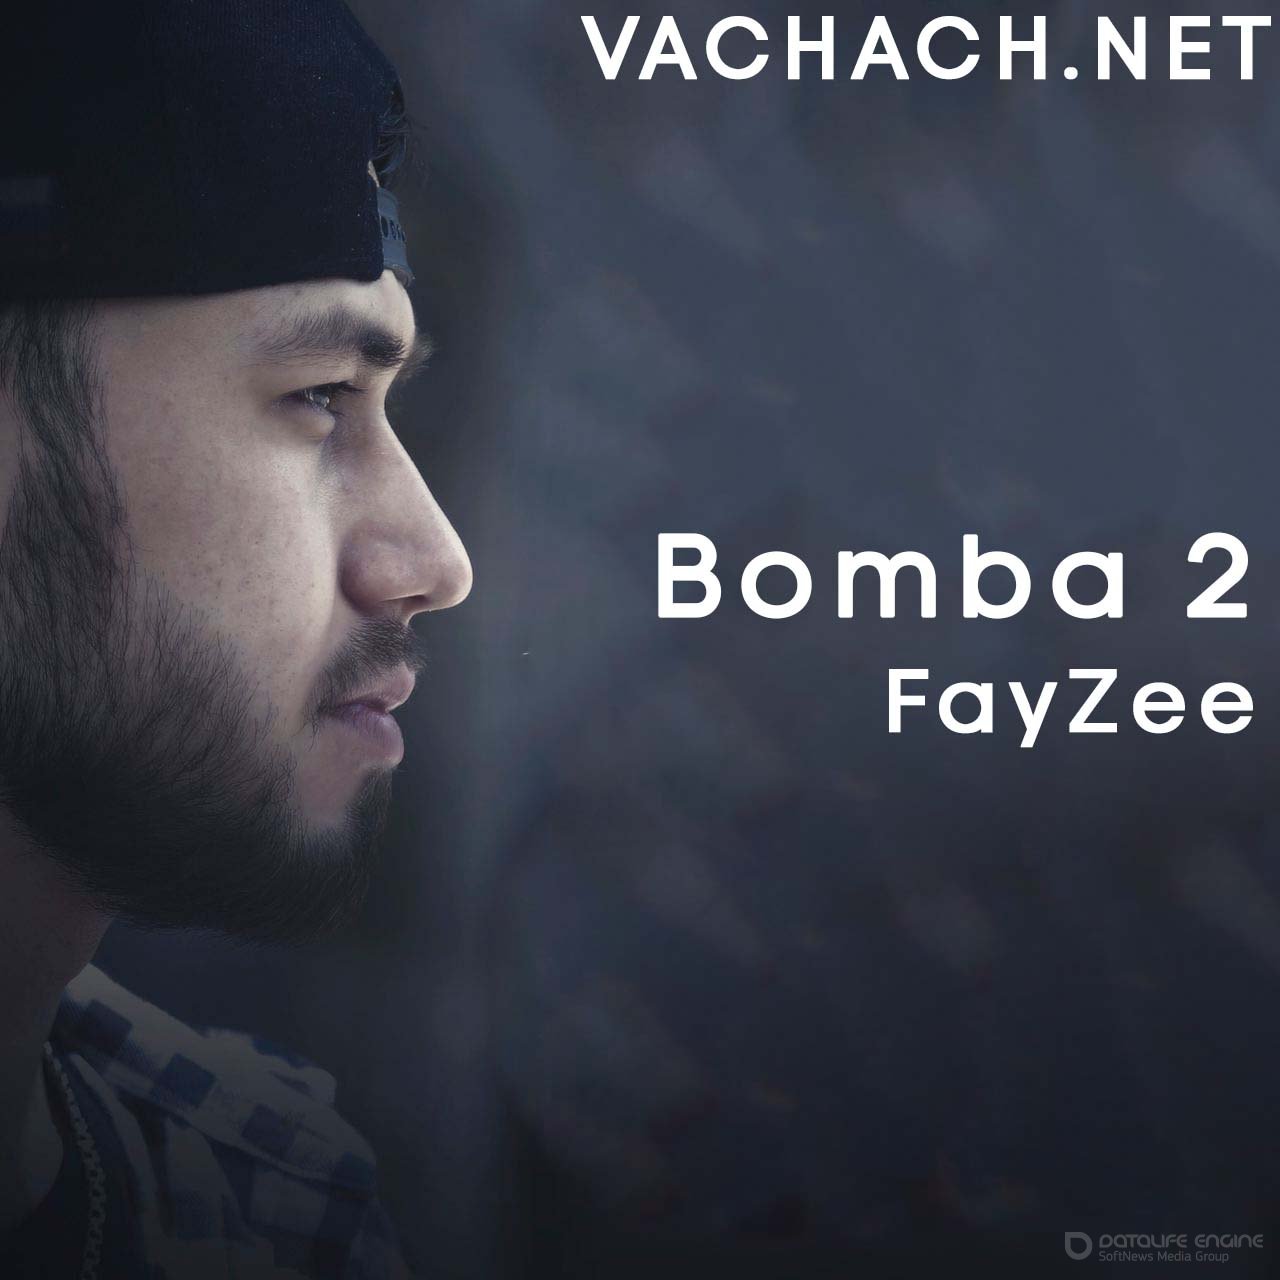 Fayzee - Bomba 2